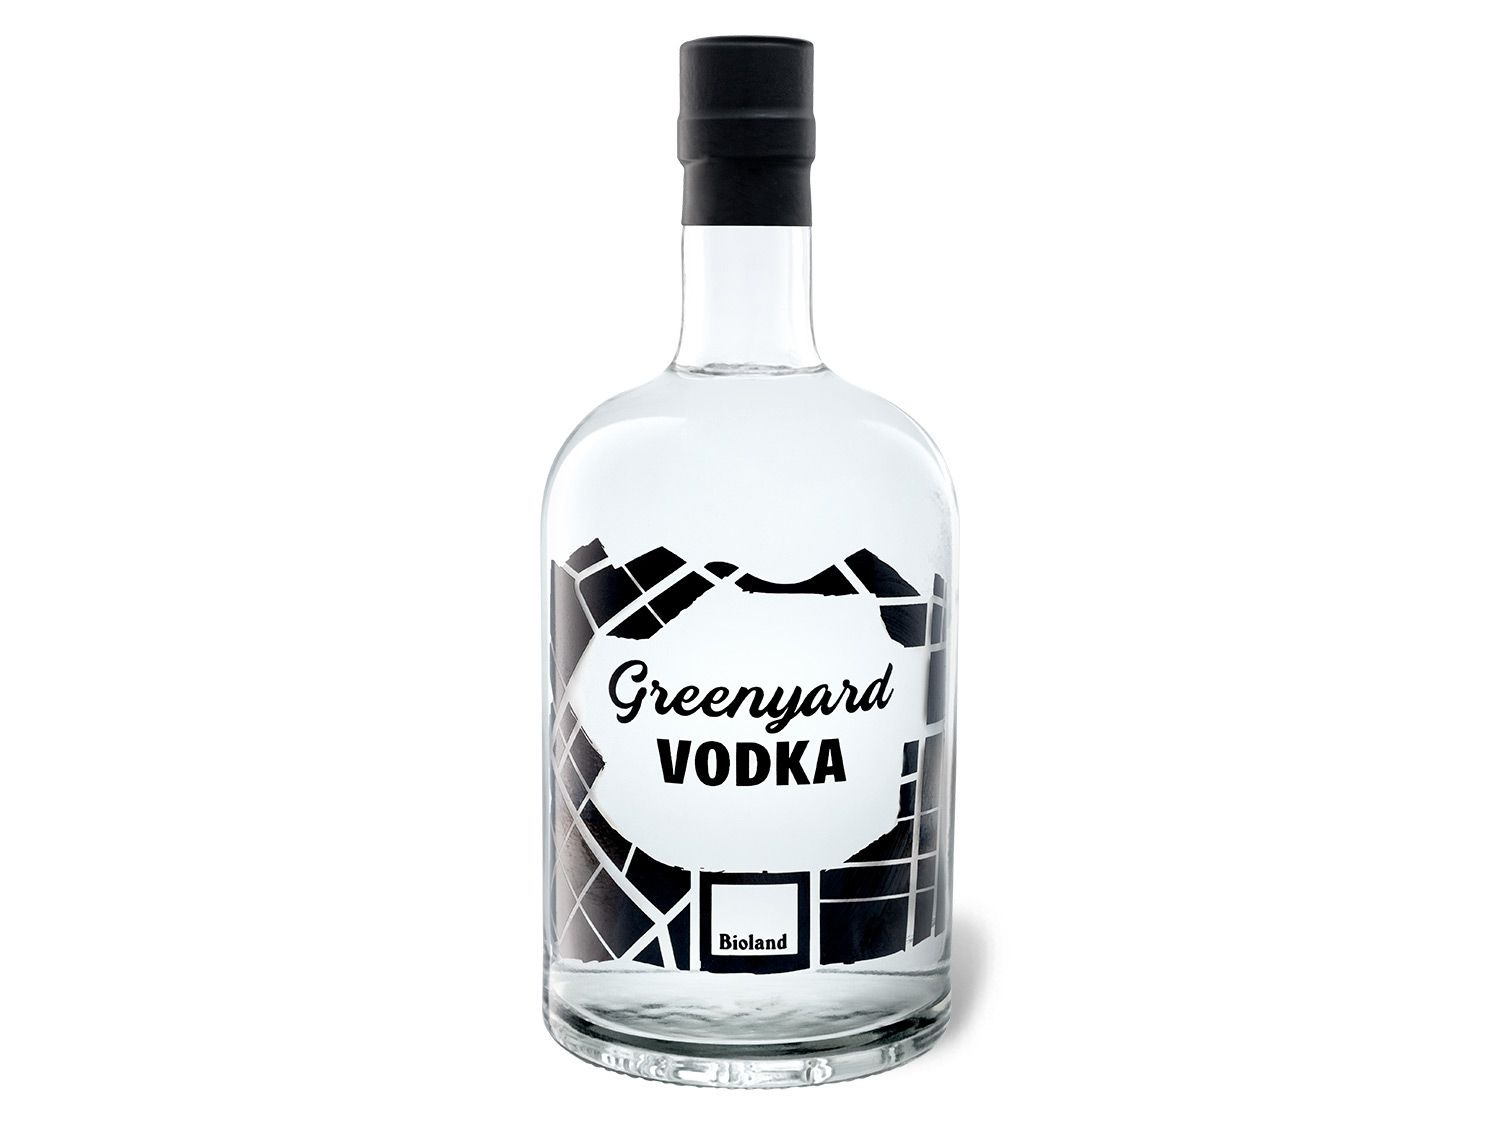 BIO Greenyard Vodka 40% Vol online kaufen | LIDL